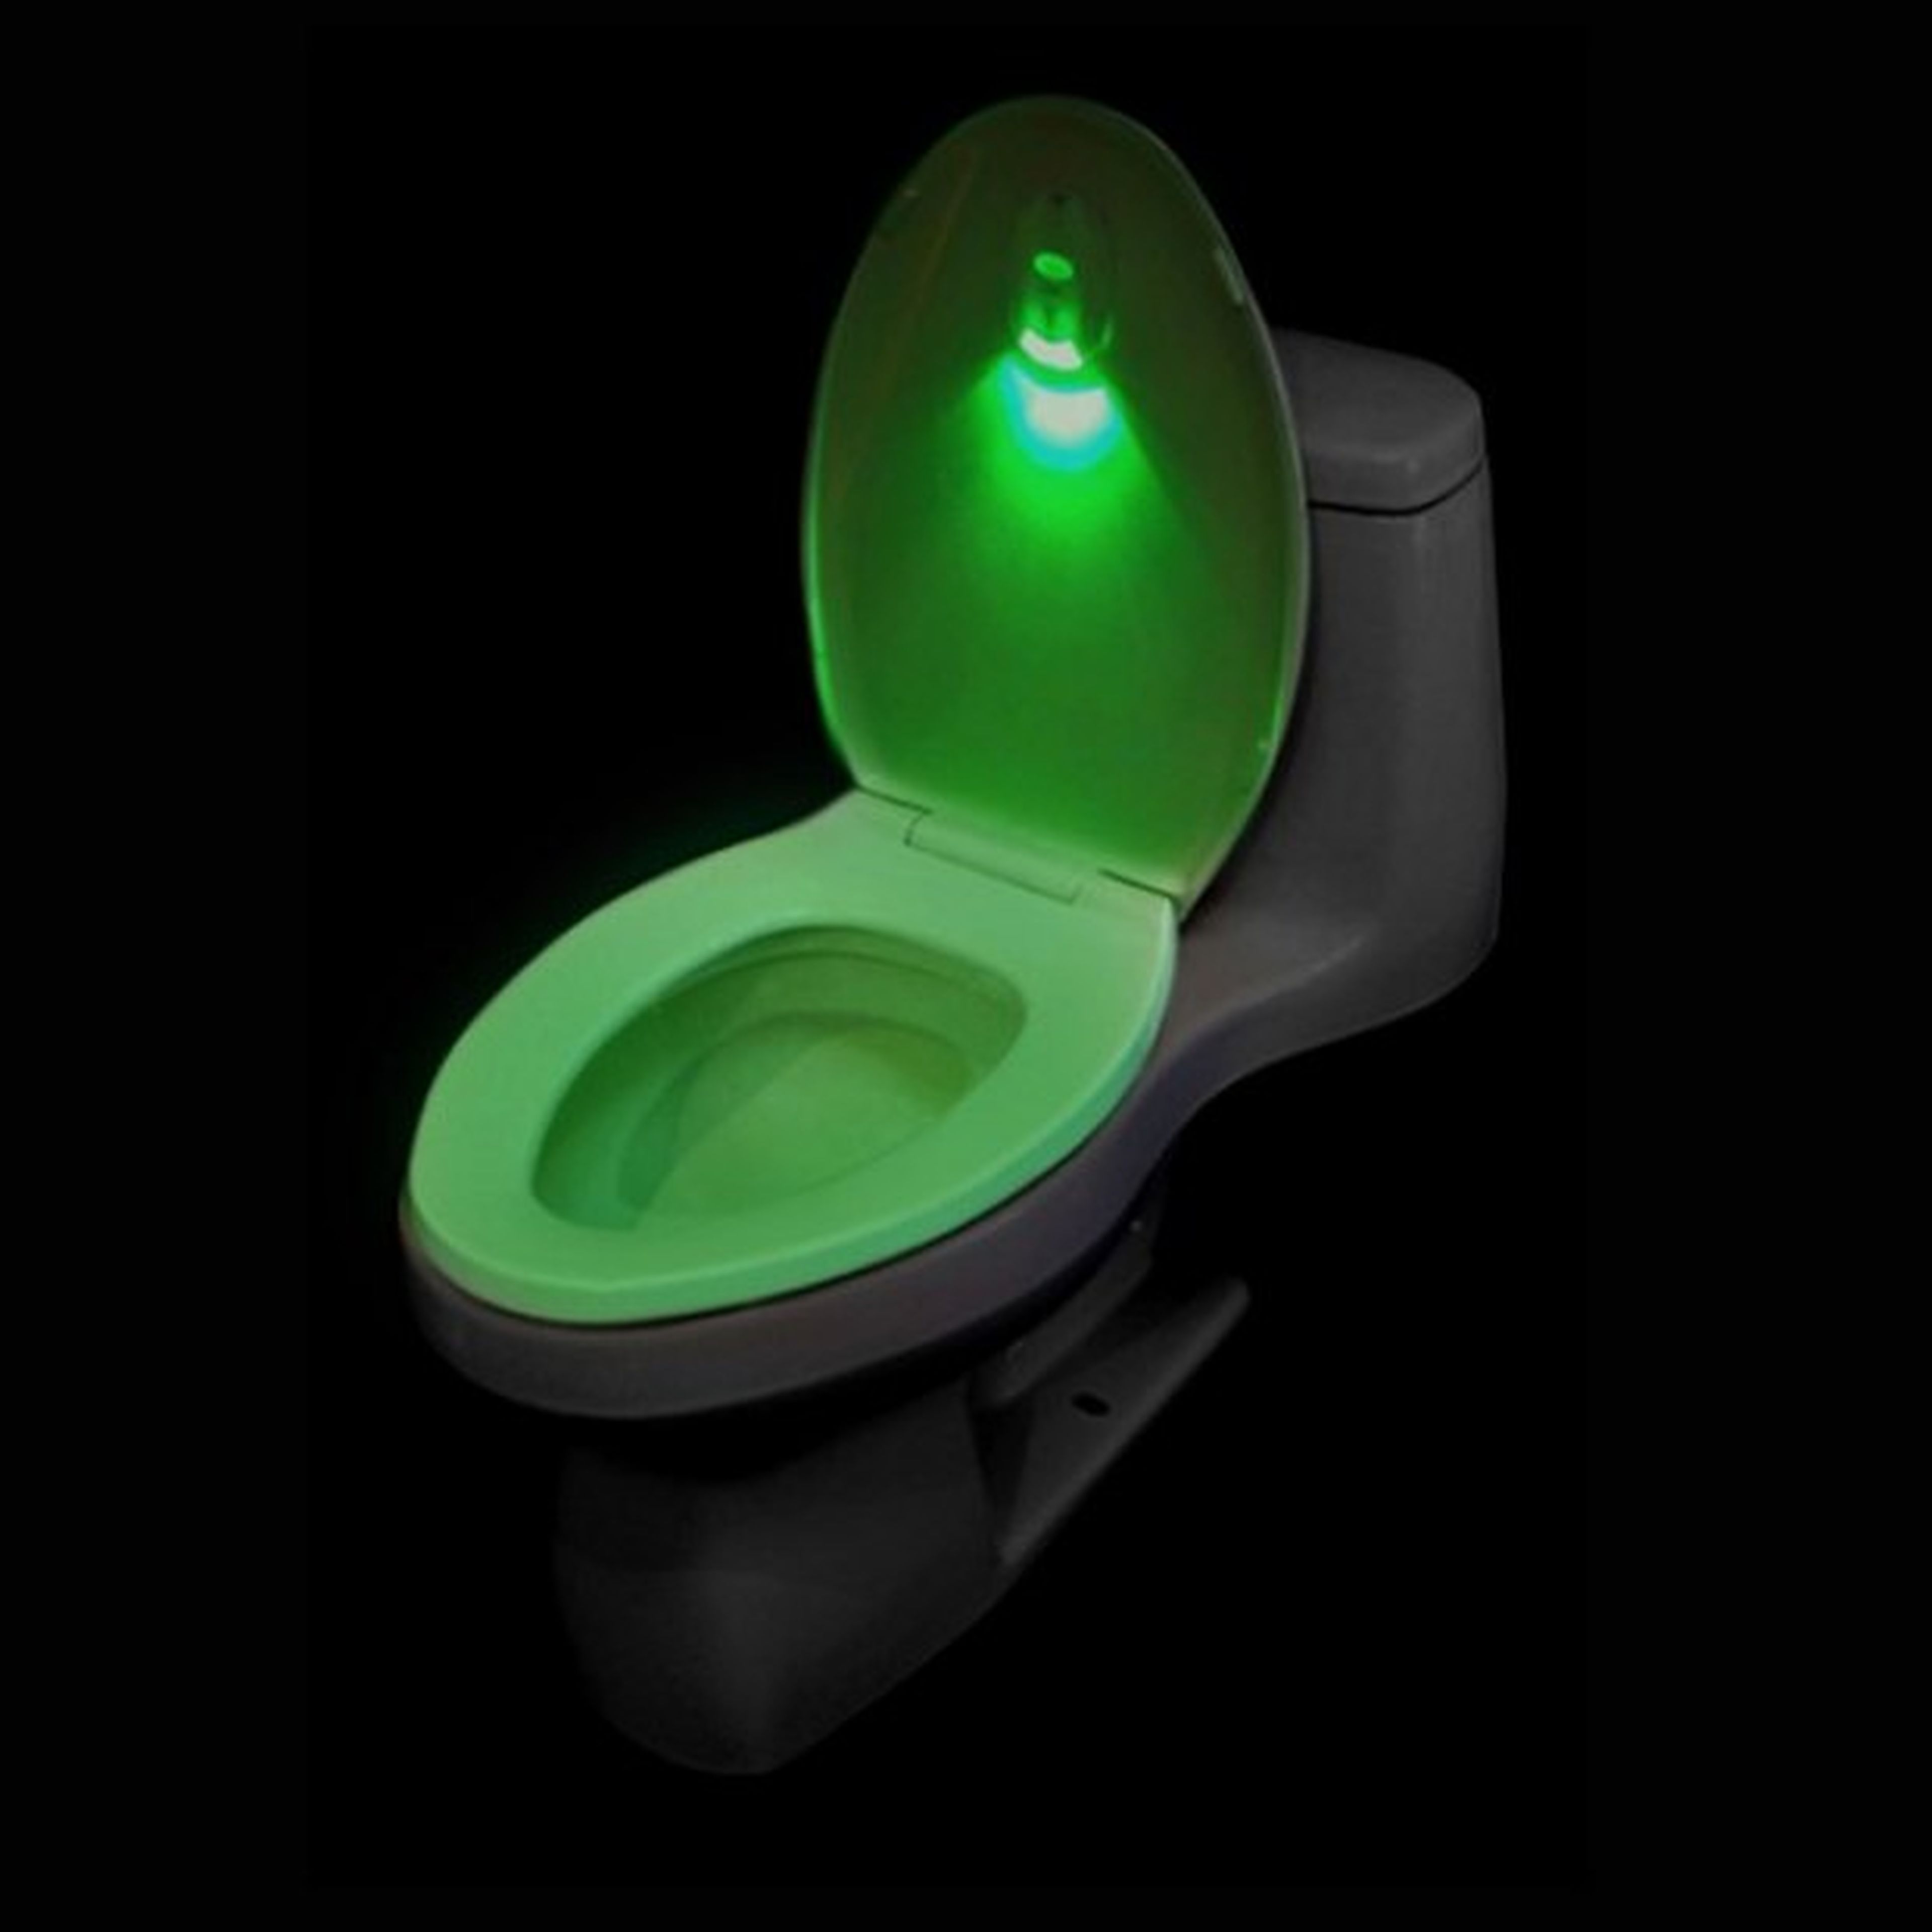 La luz verde de WC Navigator indica que la tapa de la taza está bajada